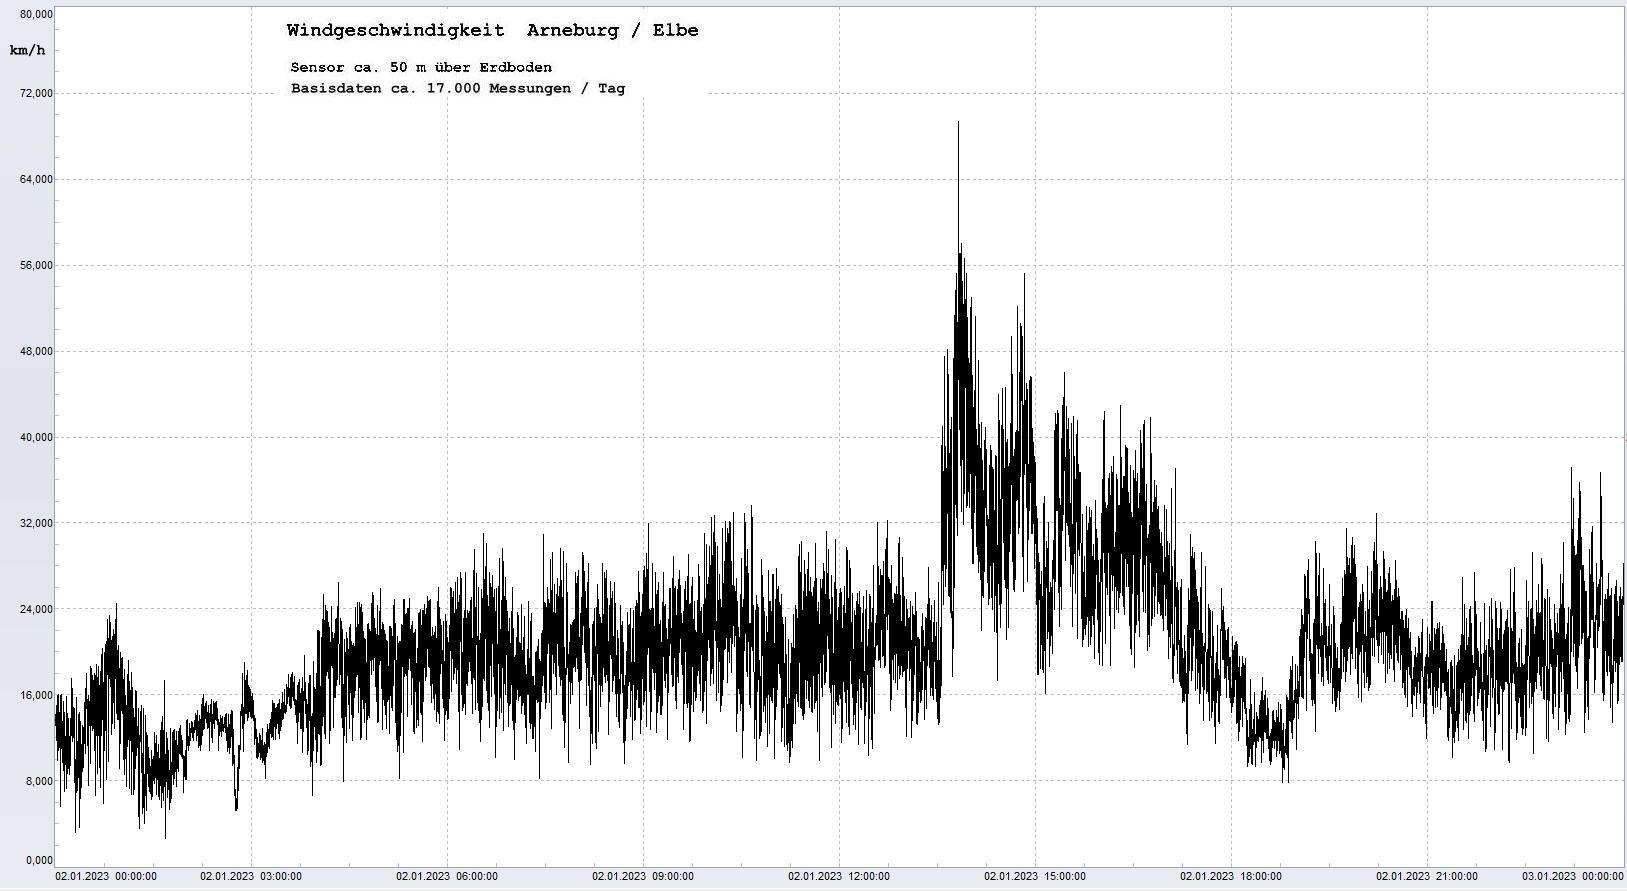 Arneburg Tages-Diagramm Winddaten, 02.01.2023
  Diagramm, Sensor auf Gebäude, ca. 50 m über Erdboden, Basis: 5s-Aufzeichnung